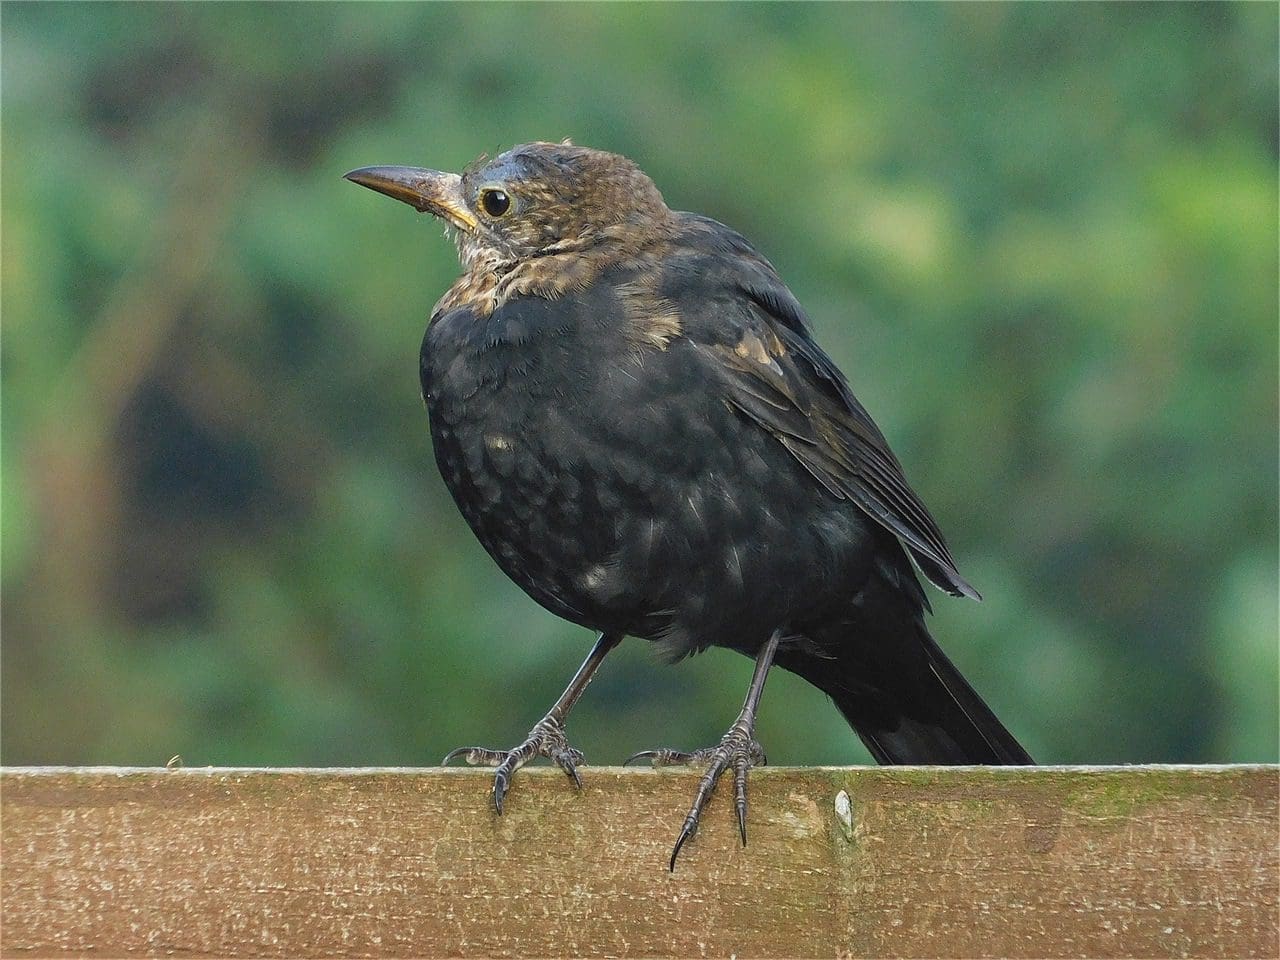 Juvenile blackbird